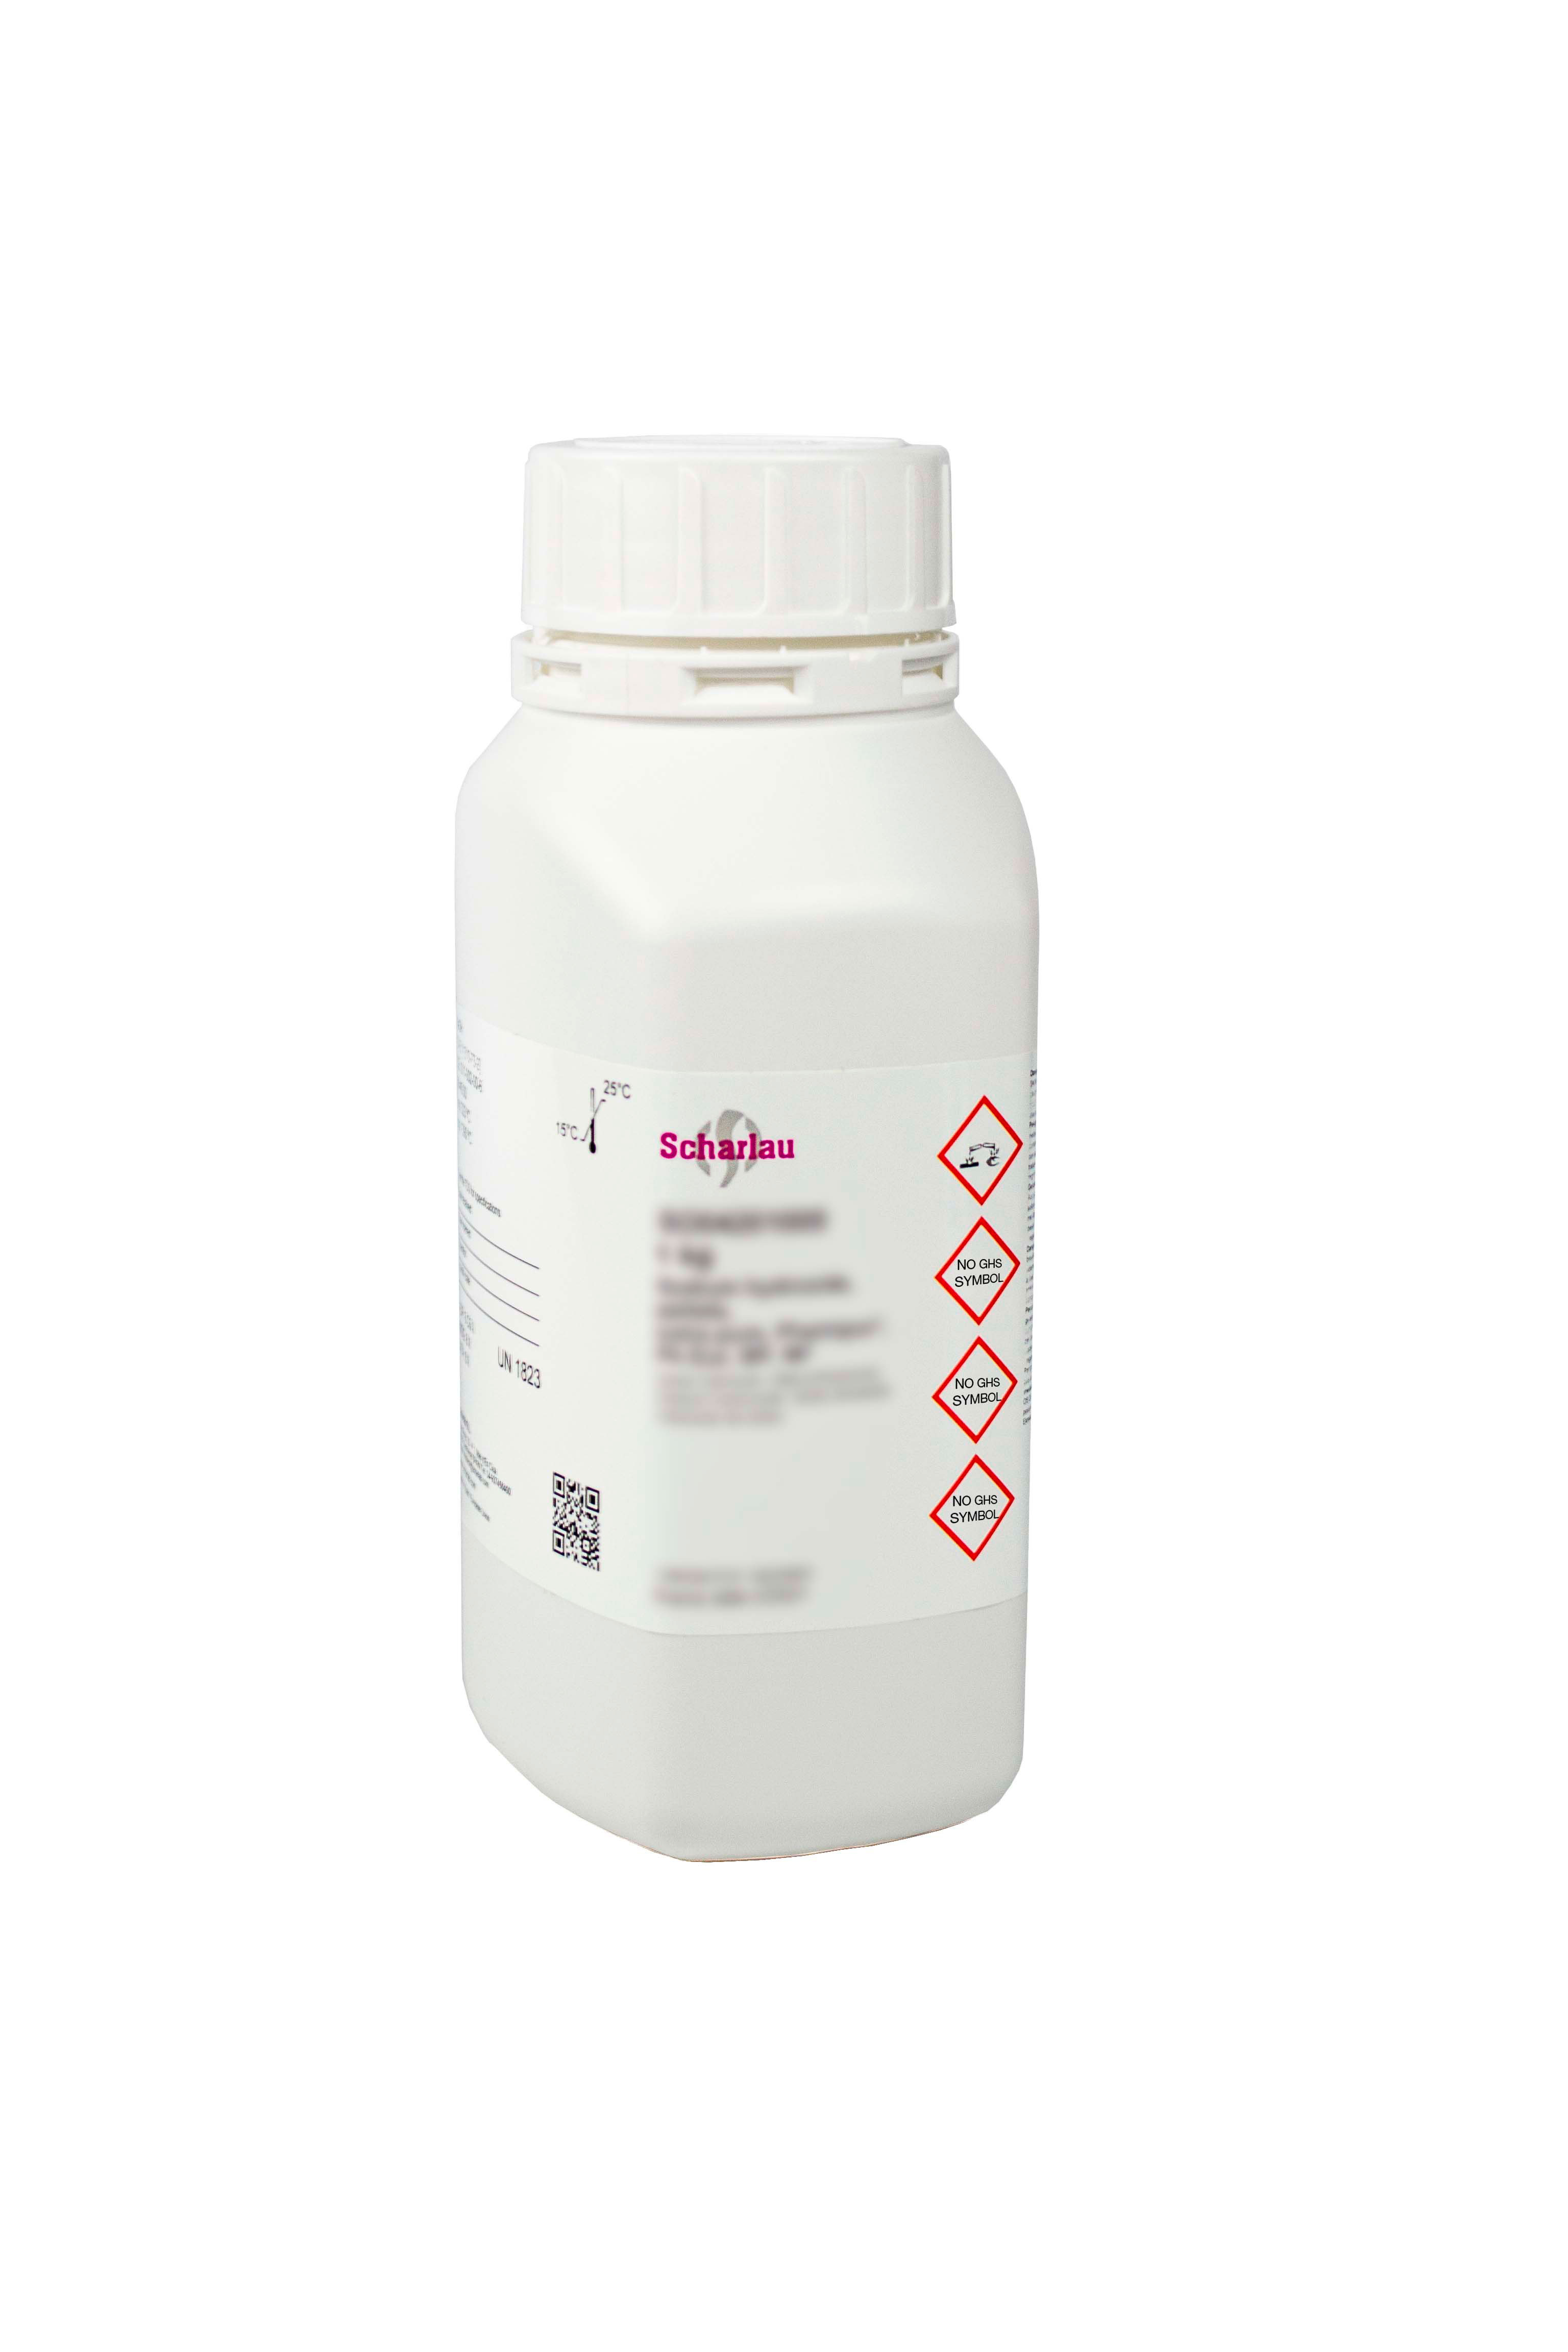 di-Potasio oxalato monohidrato, EssentQ®